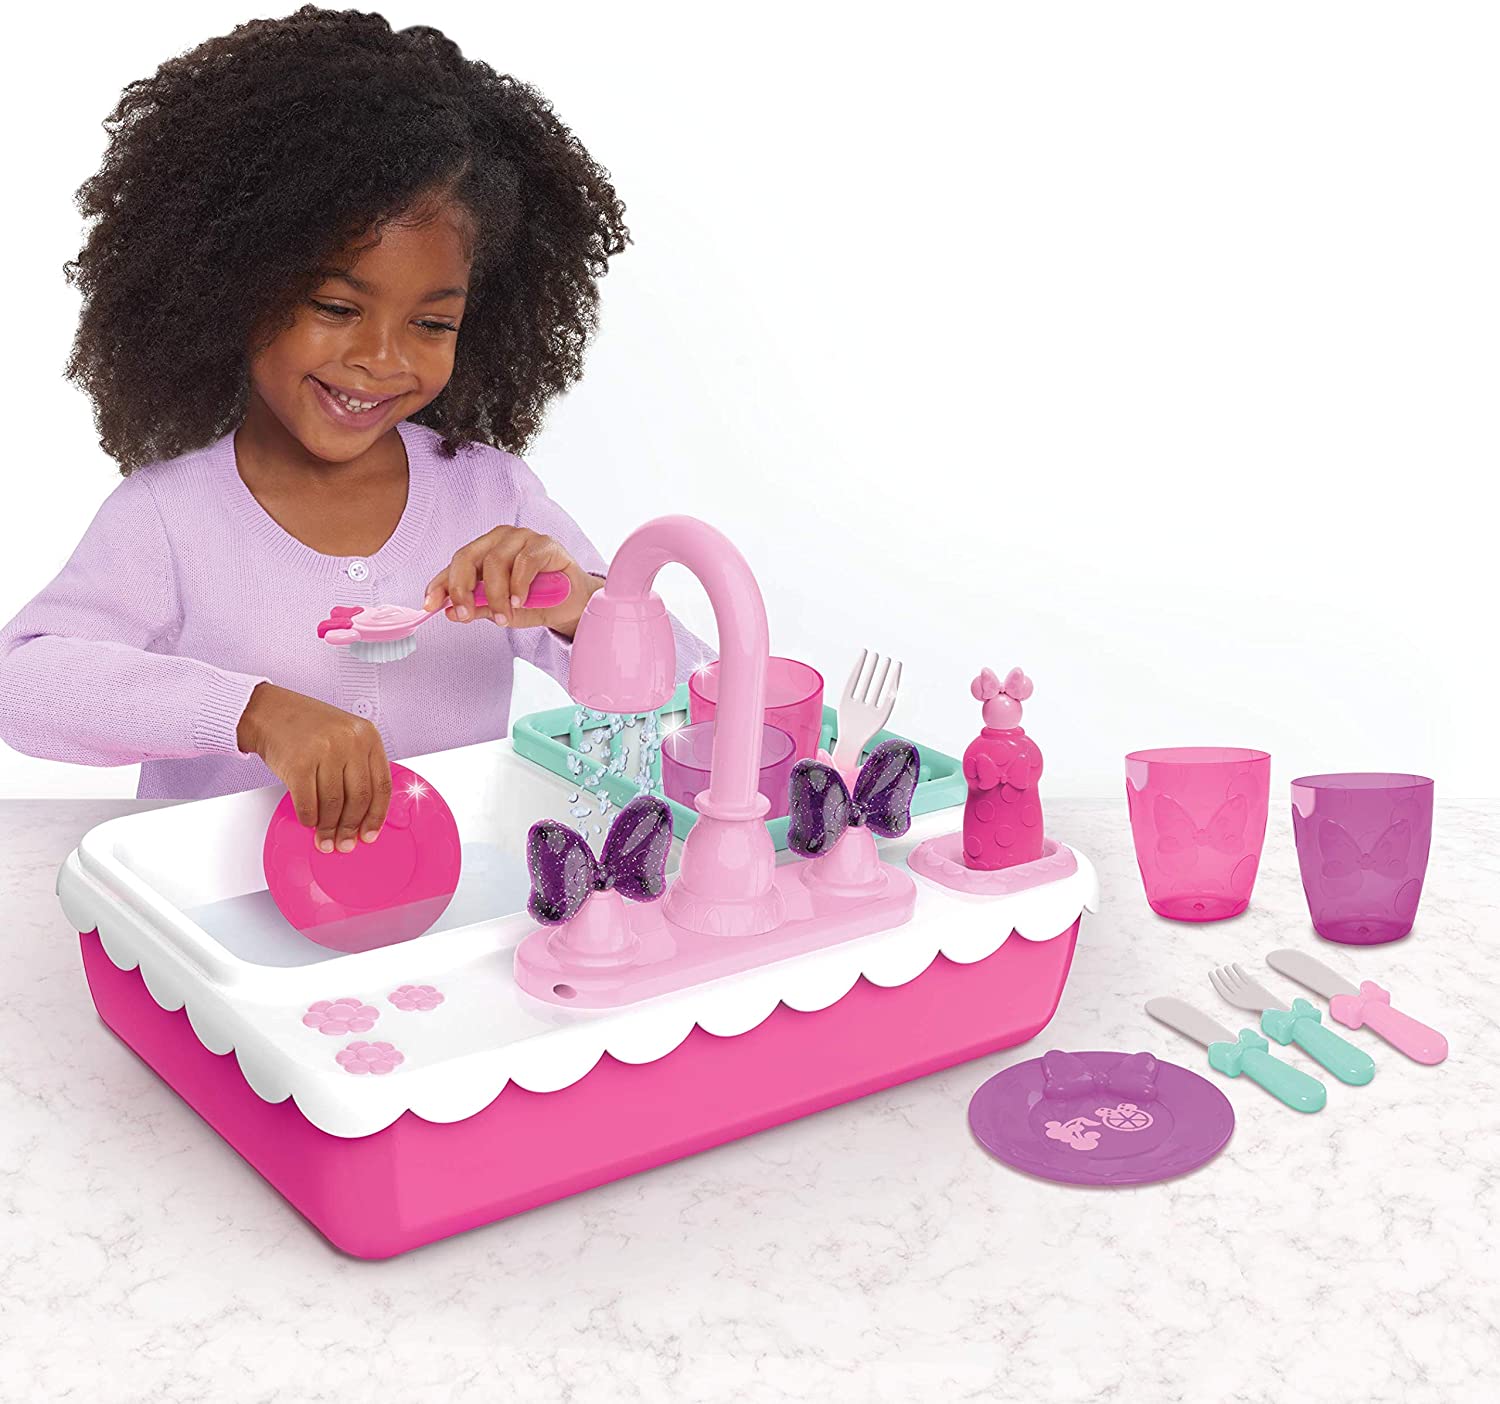 Pretend Play Working Sink Kids Kitchen Set Toys